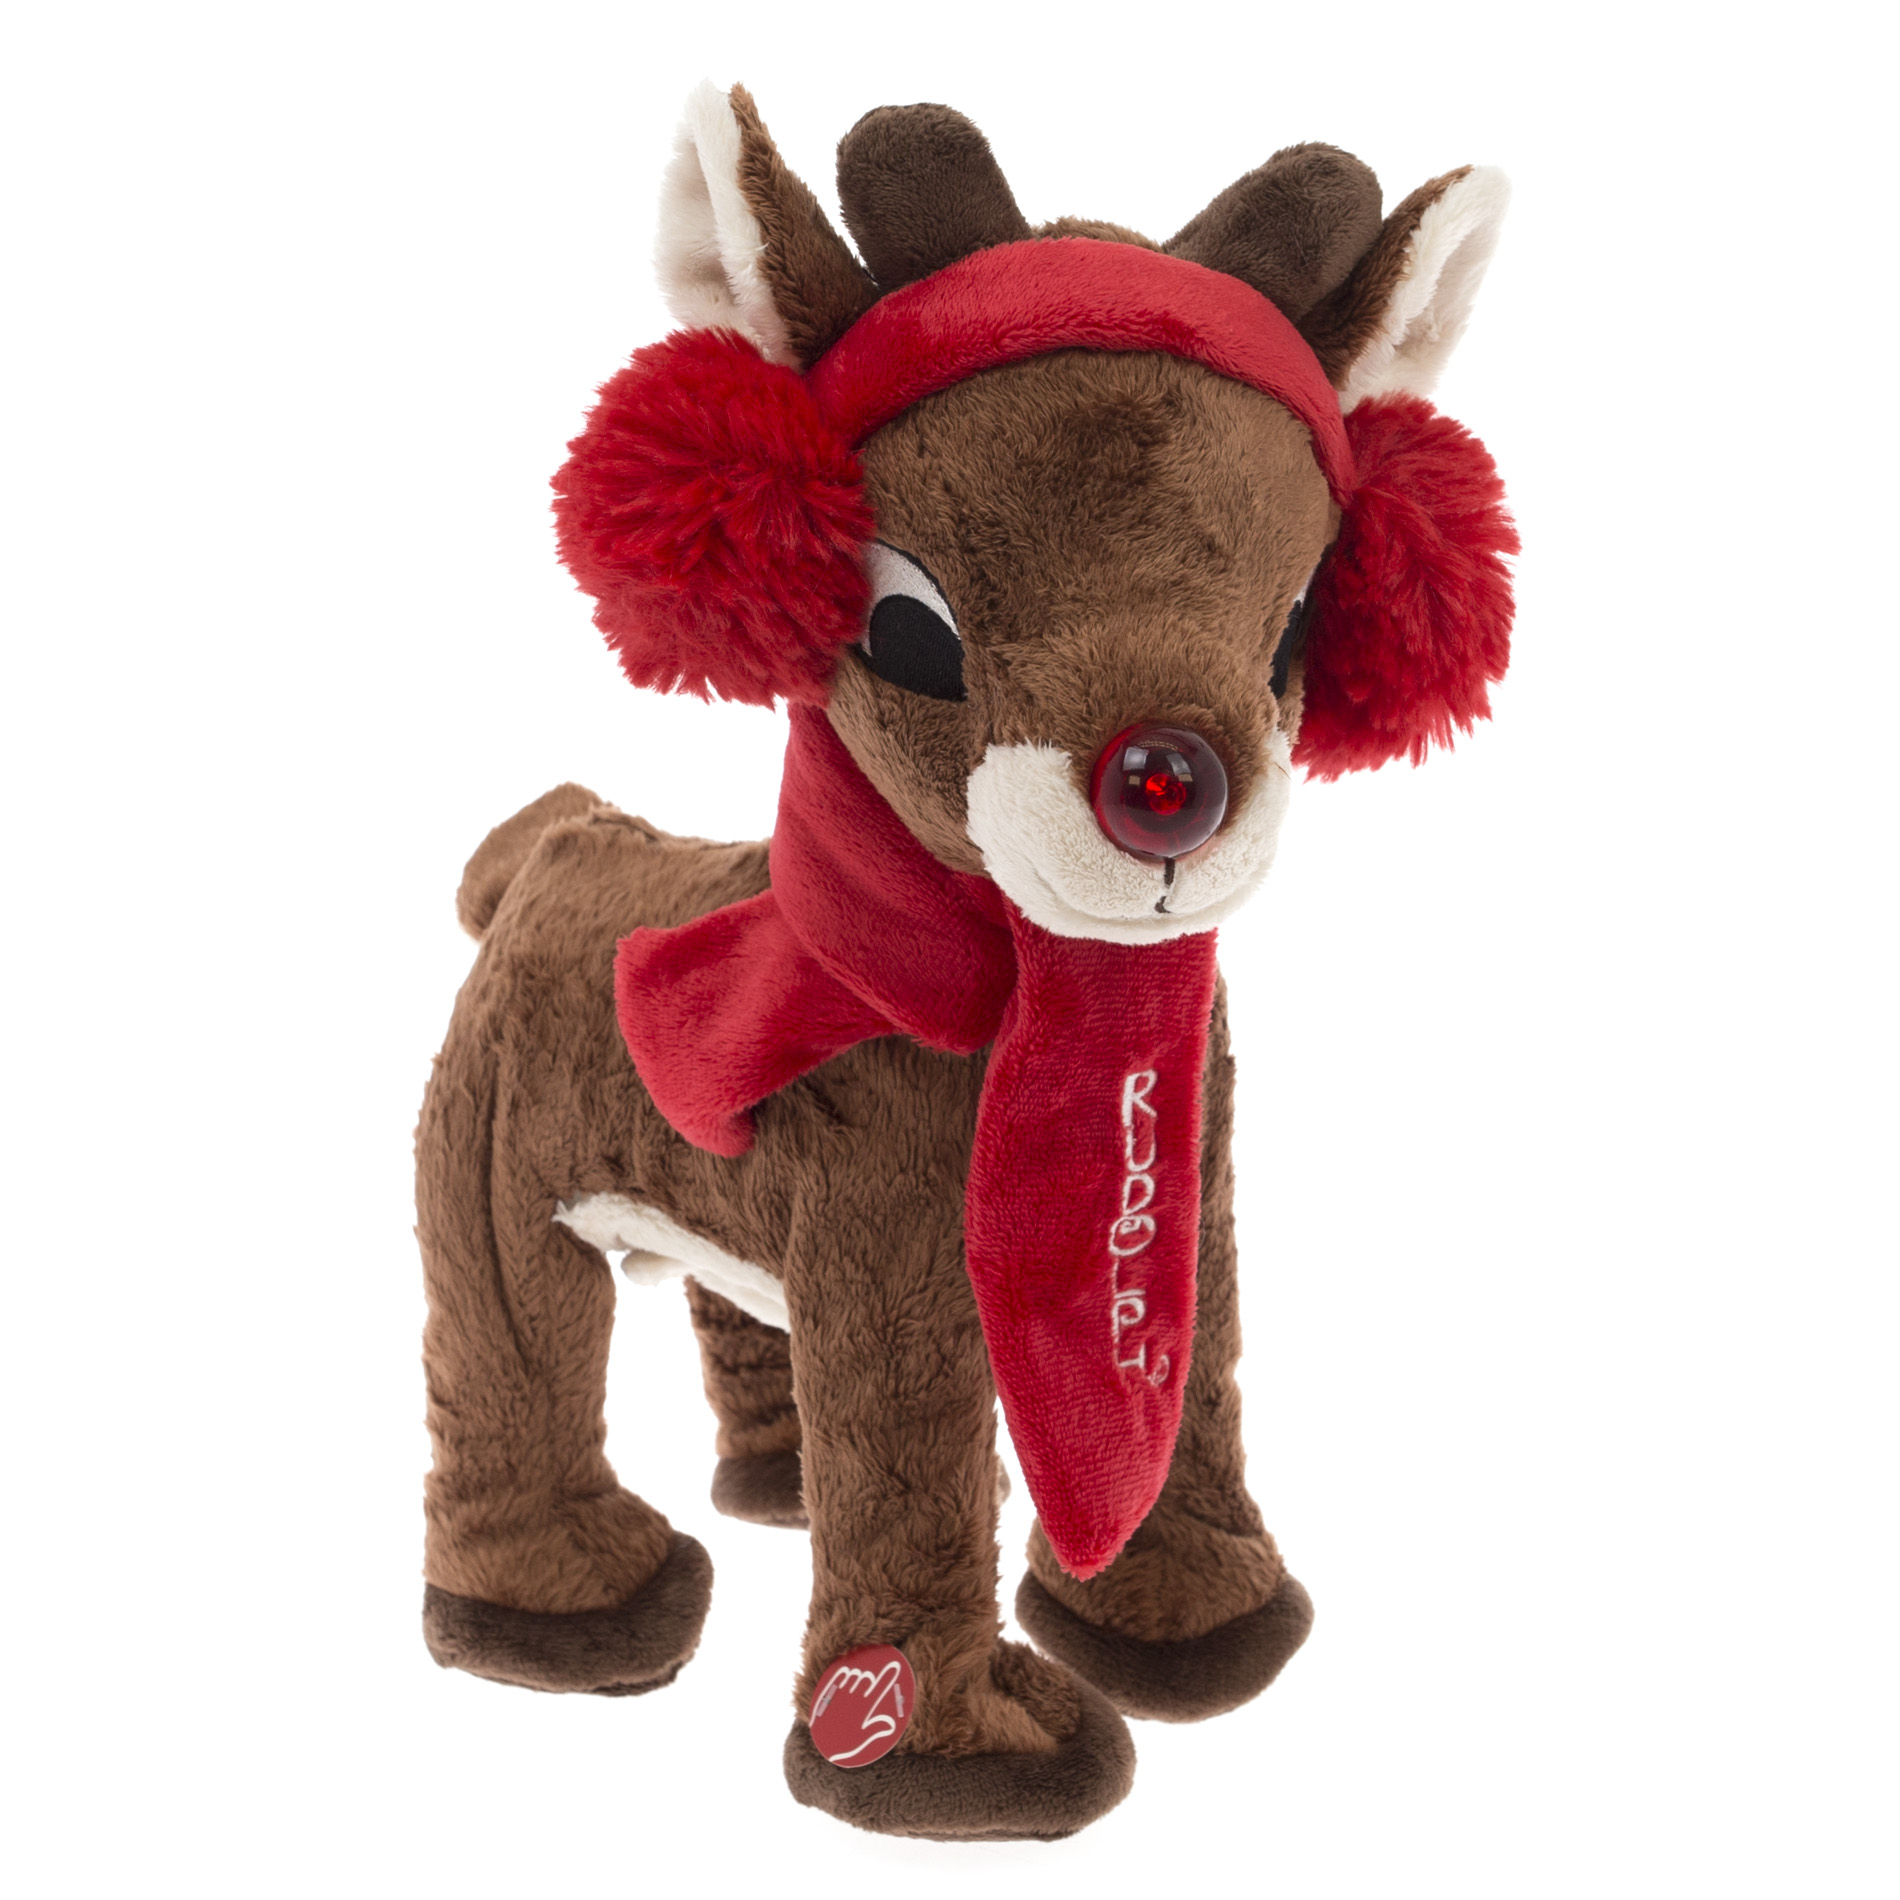 kmart reindeer toy